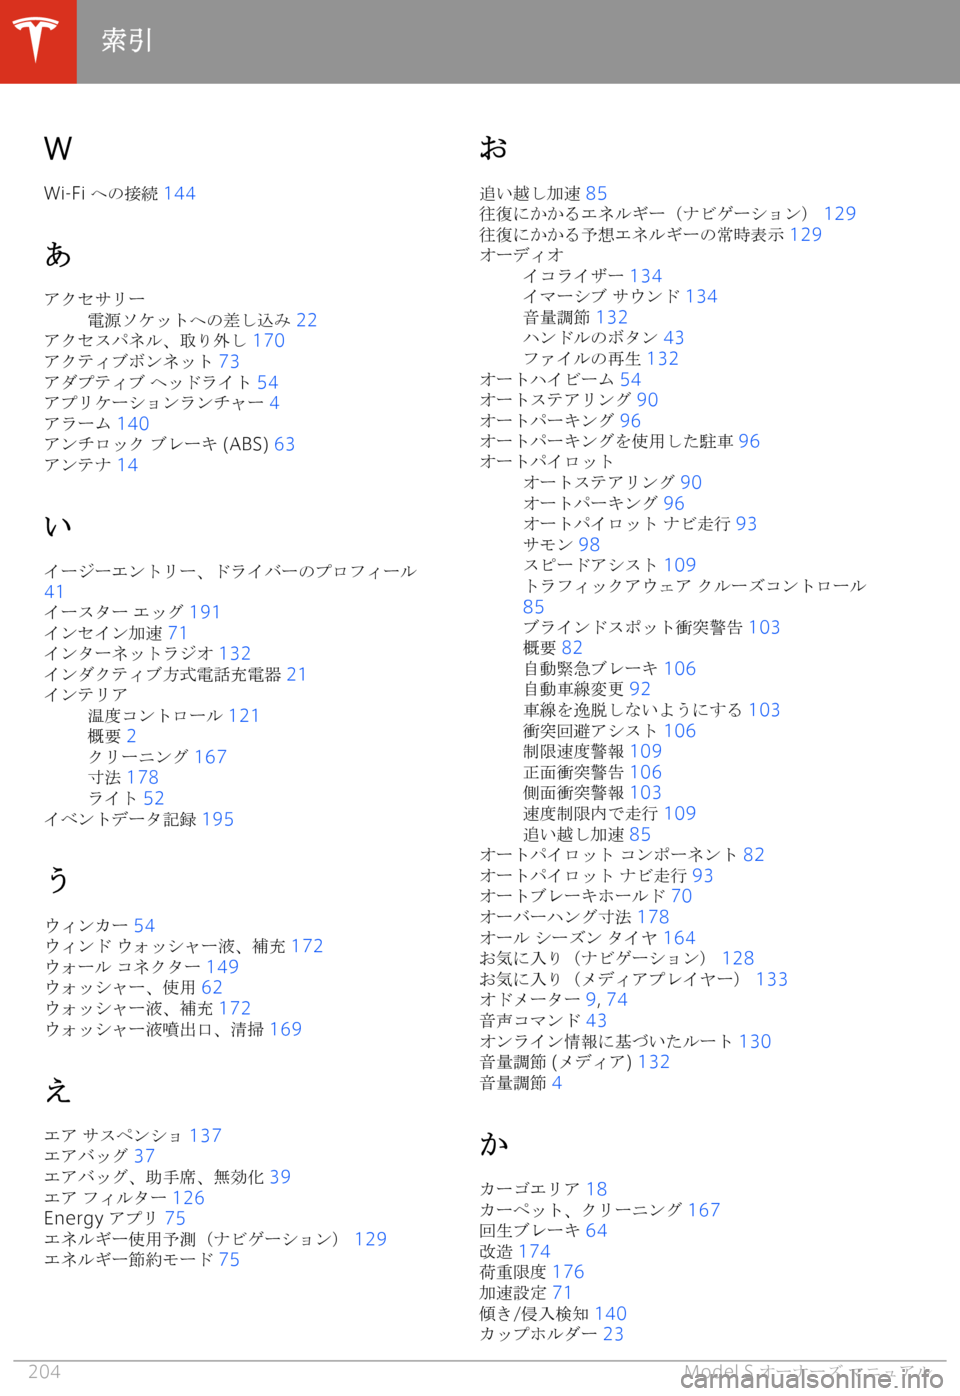 TESLA MODEL S 2020  取扱説明書 (in Japanese) �W
�W�i�-�F�i�  lbK)F � �1�4�4
6